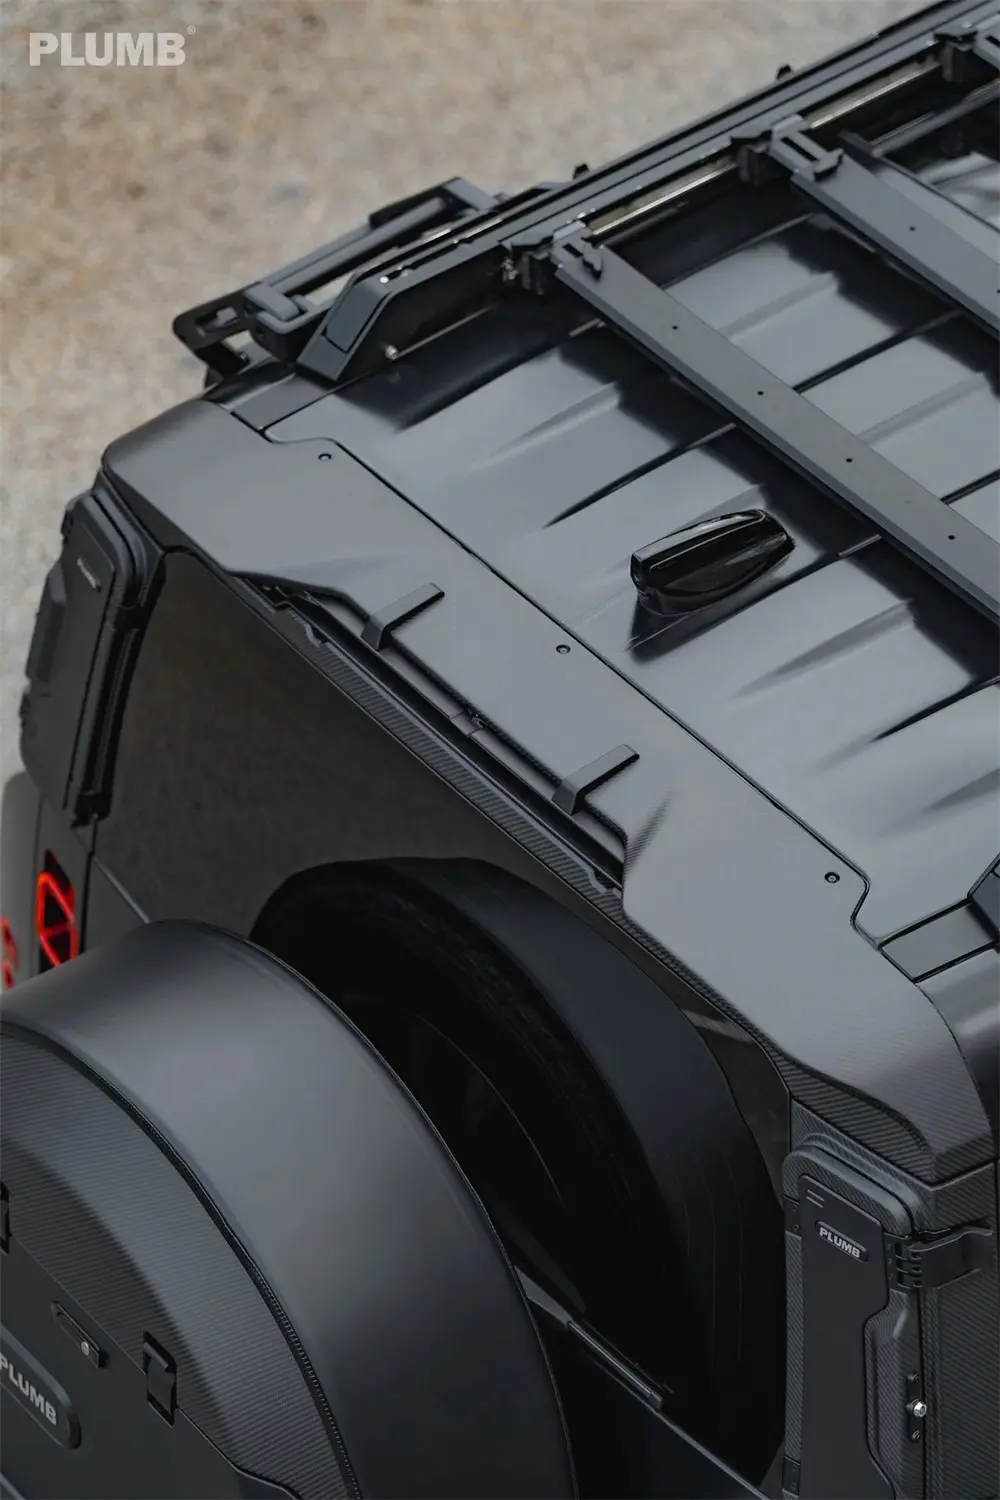 PLUMB Rear Spoiler Kit for Land Rover Defender Factory